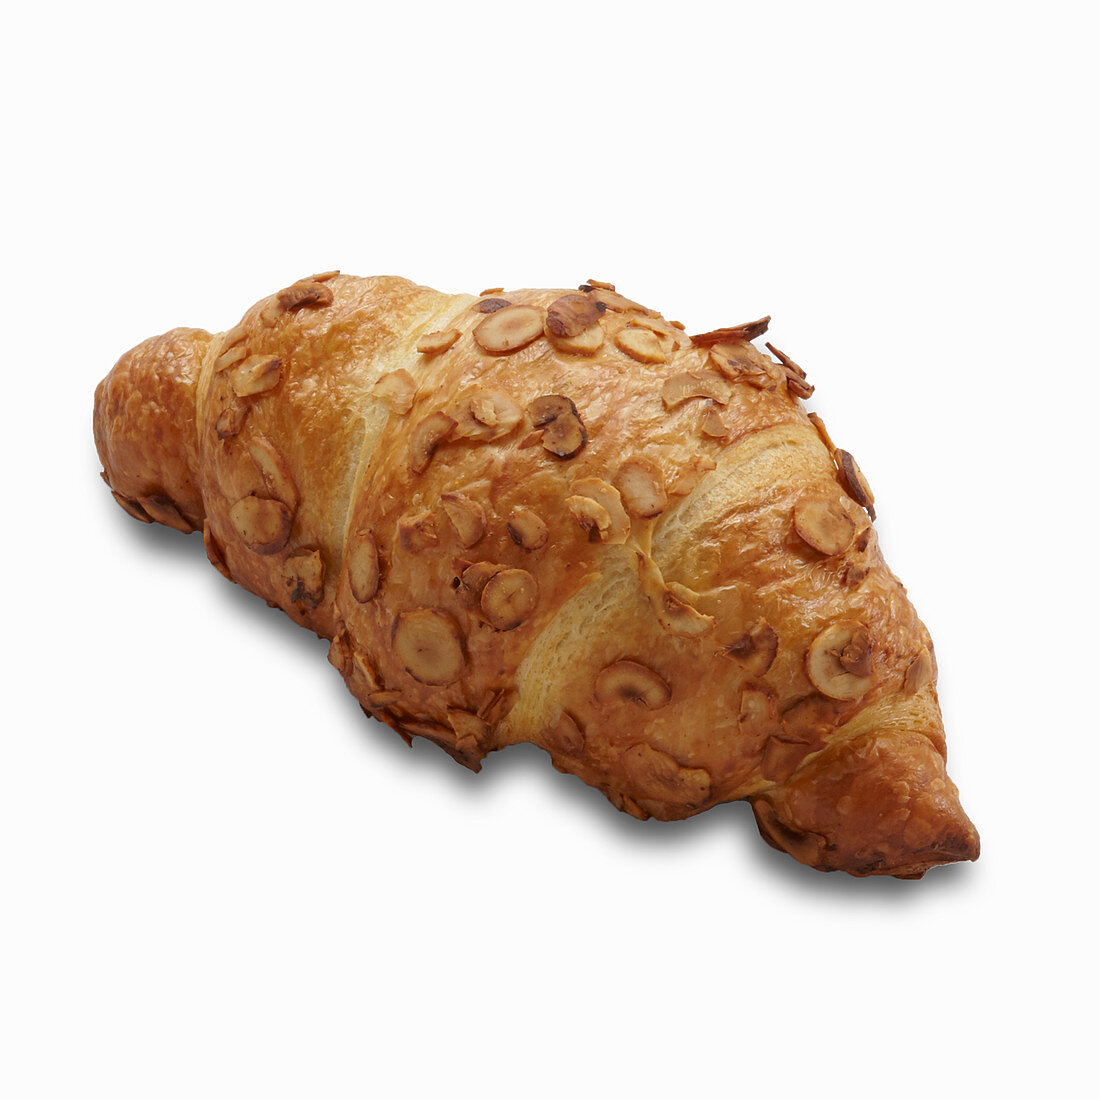 Ein Nuss-Croissant vor weißem Hintergrund